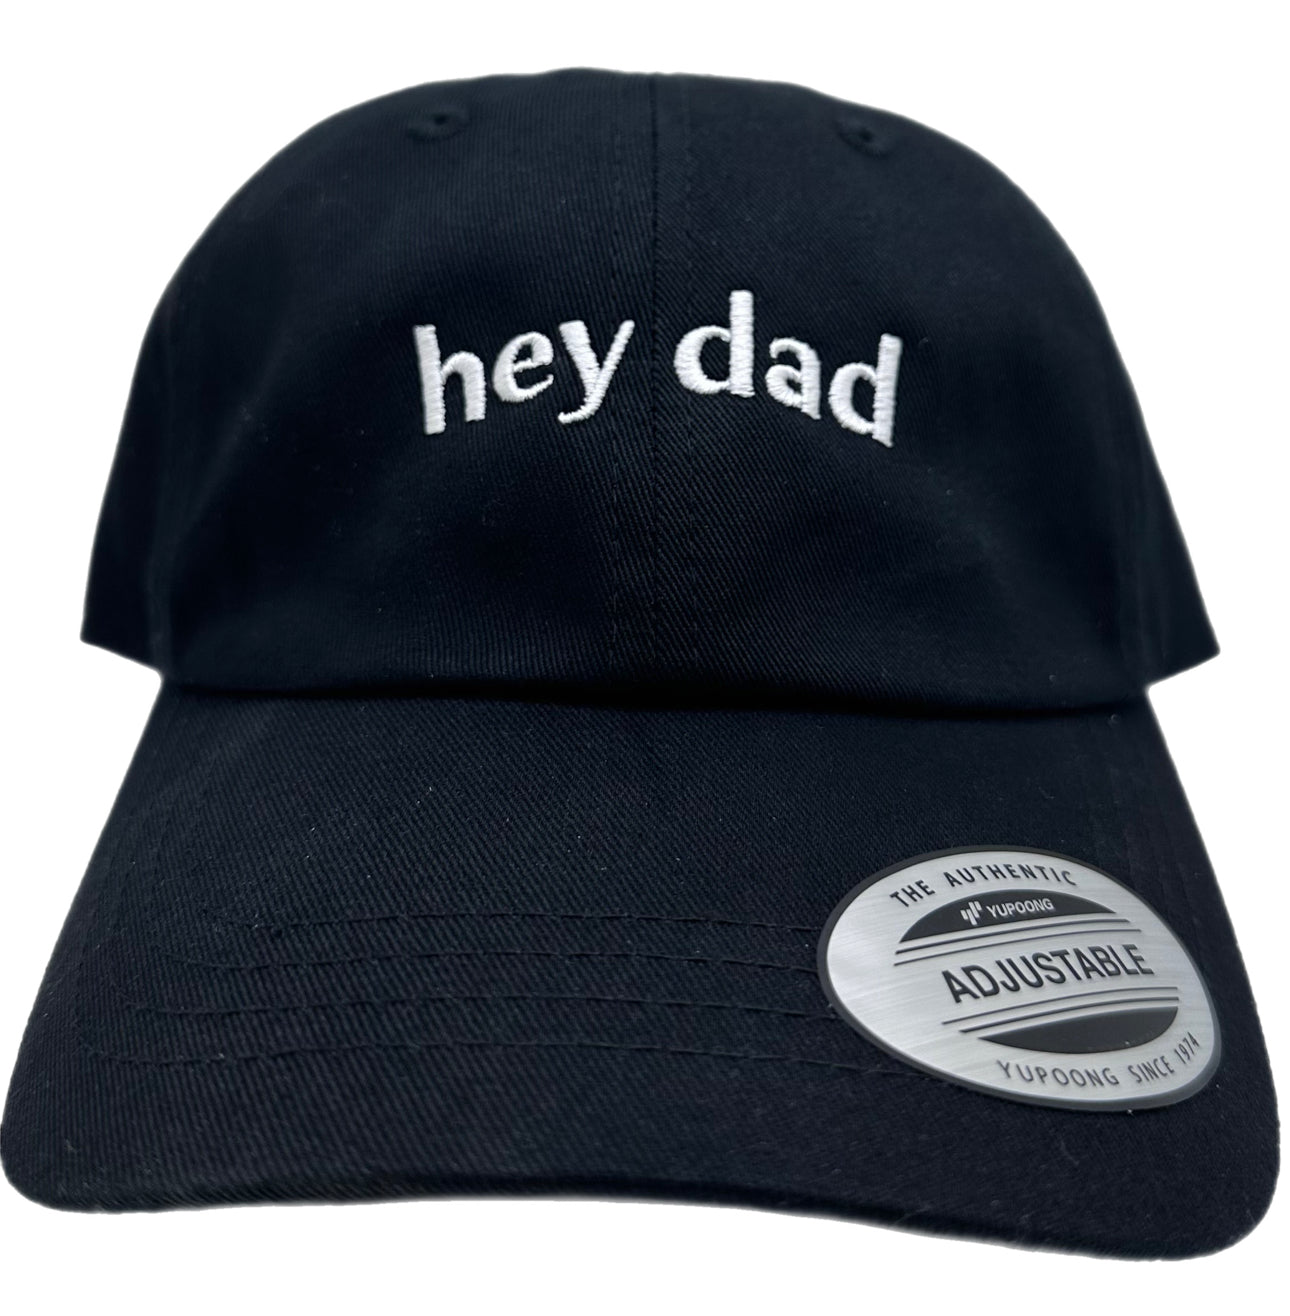 "hey dad" Basic Dad Hat